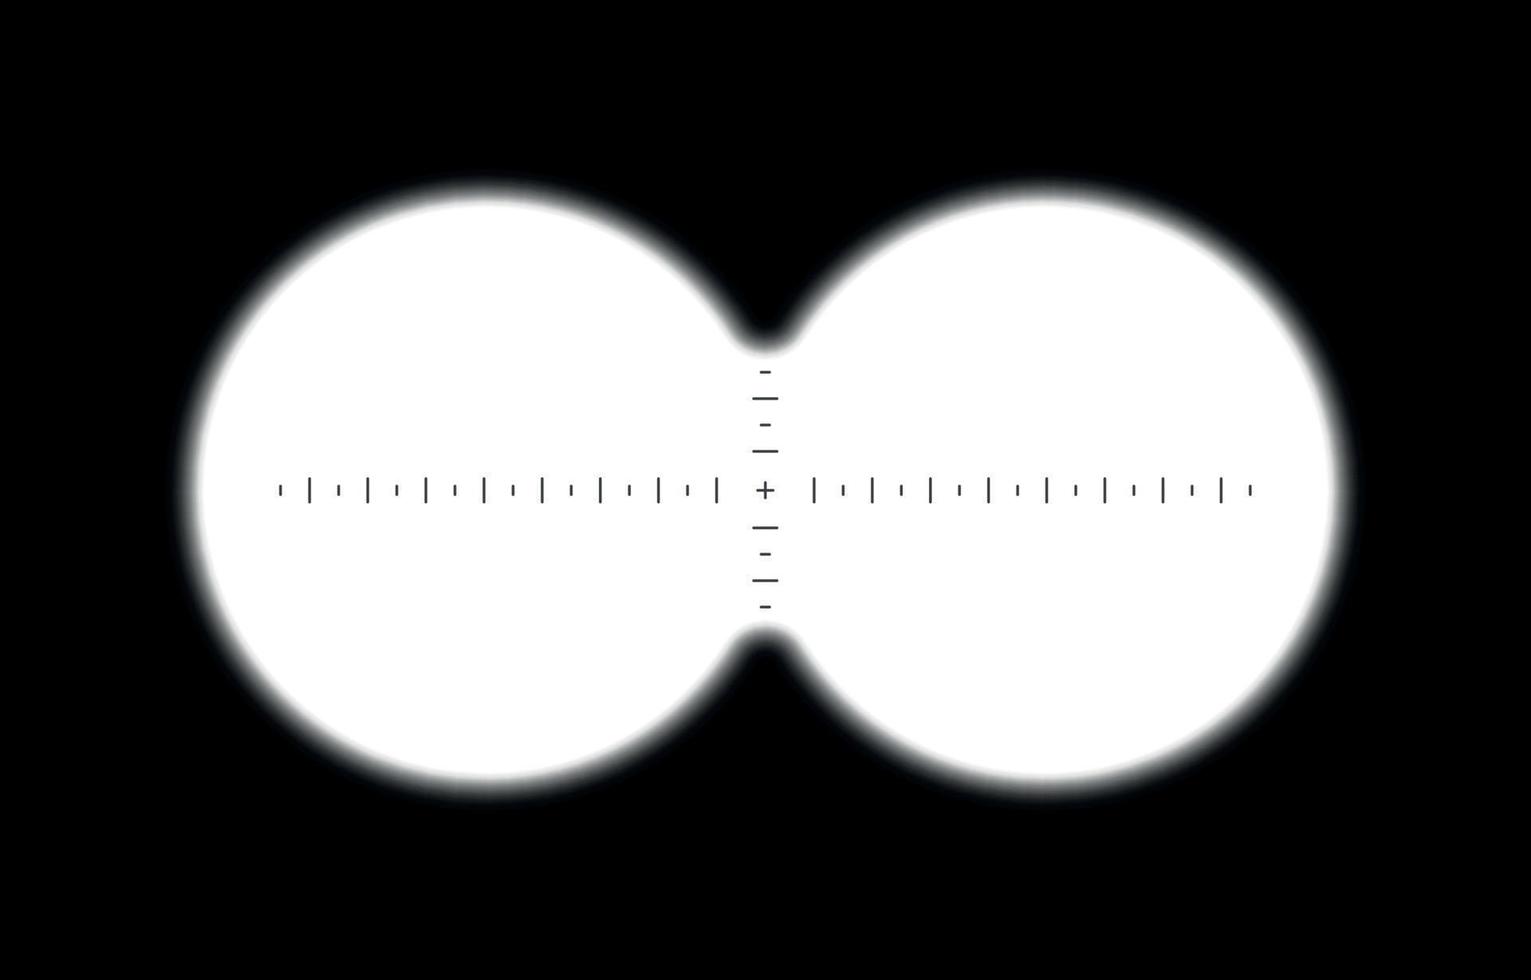 Fernglas-Spion-Ansicht. Teleskopzielvisier, Periskoplinsenansicht. vektor isolierte illustration